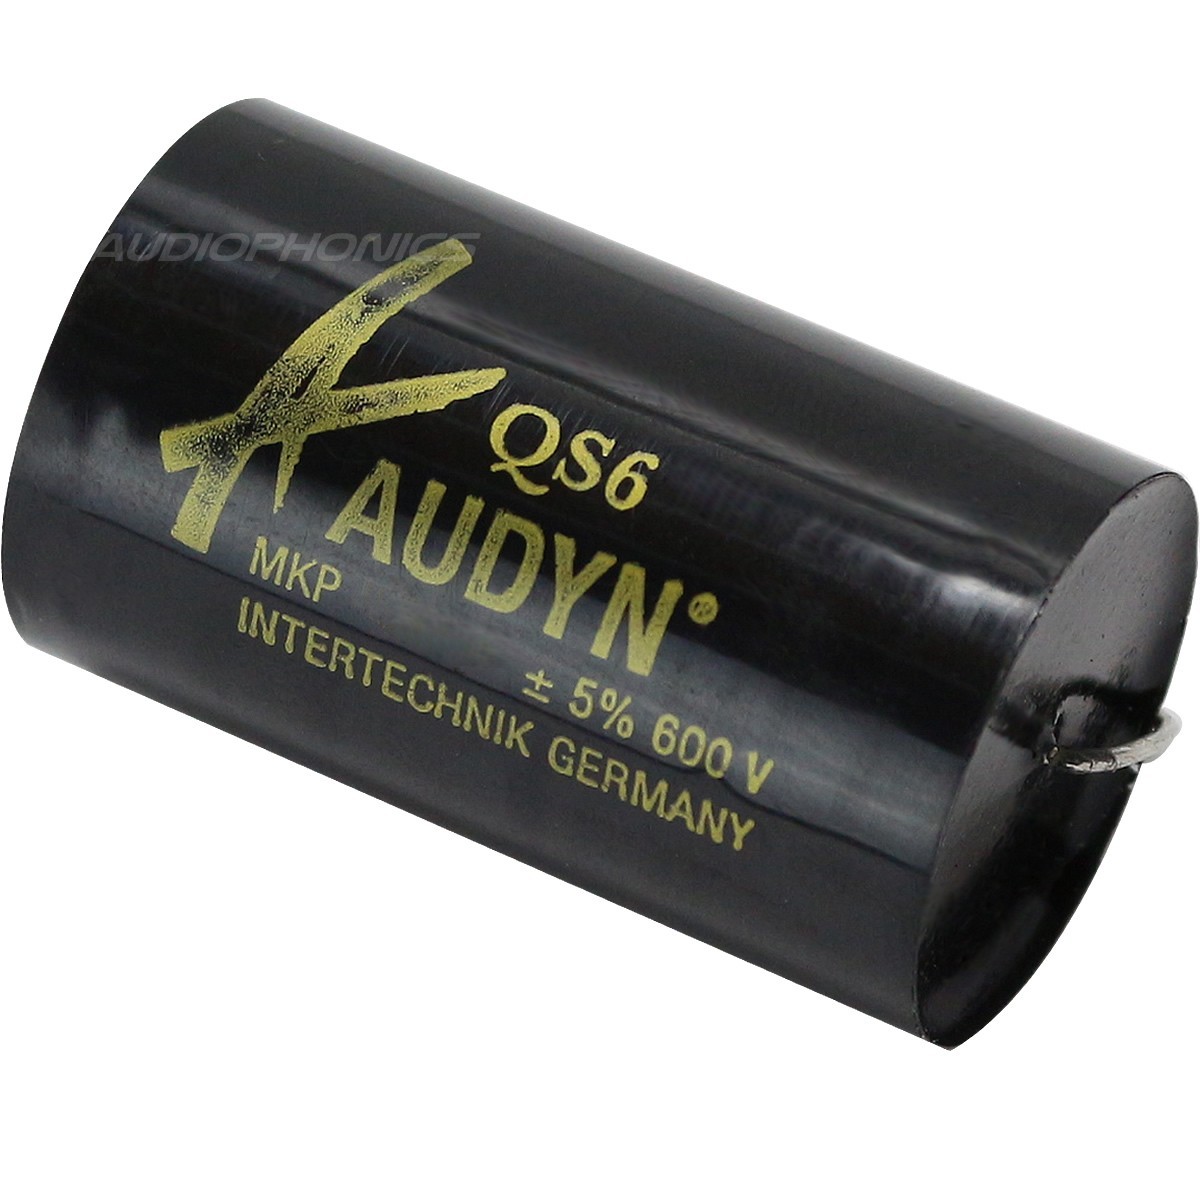 AUDYN CAP QS6 MKP Capacitor 600V 0.56µF